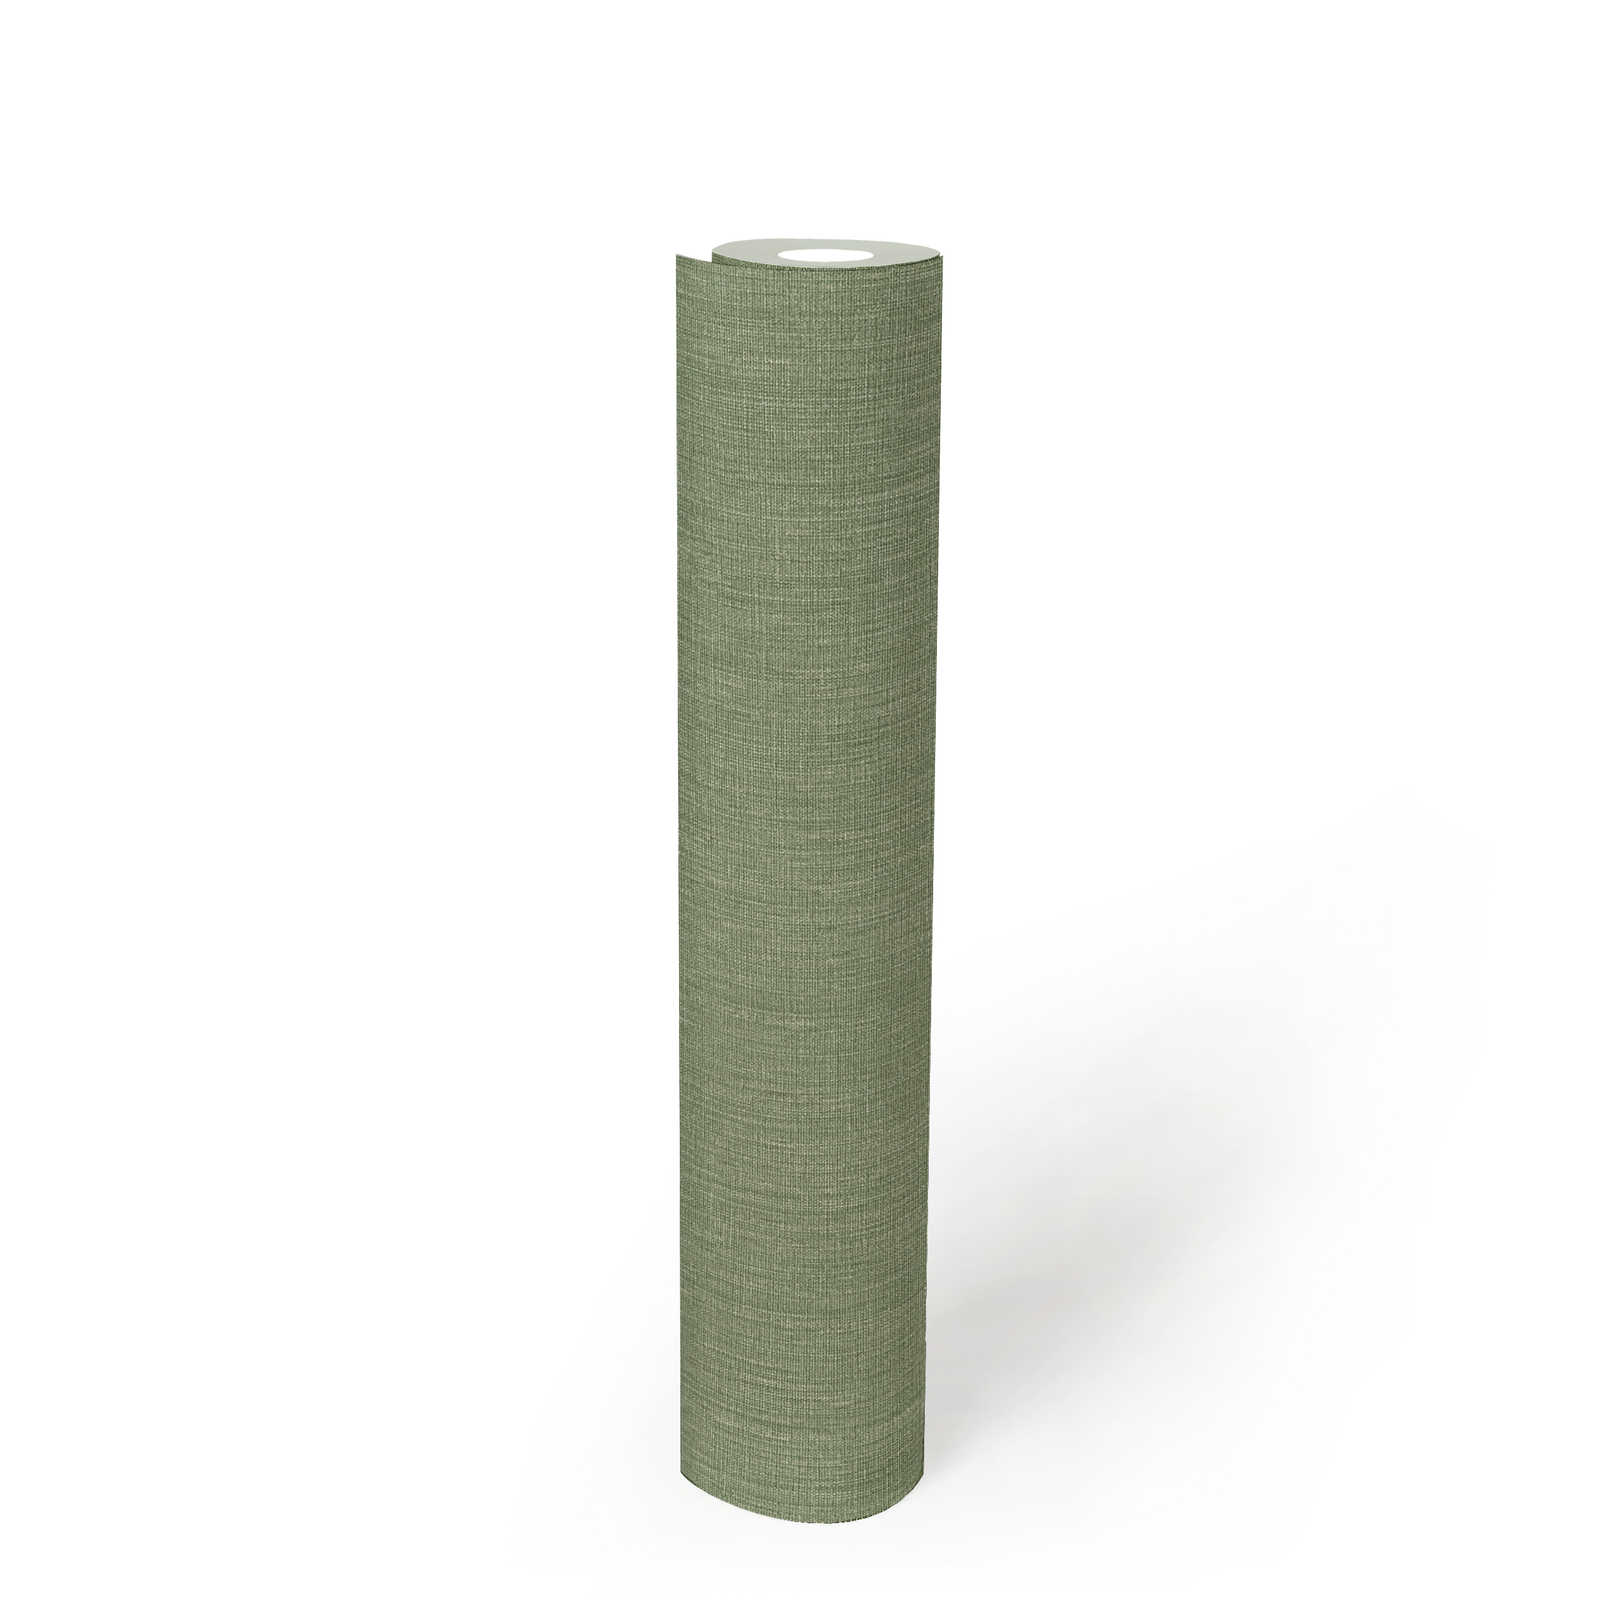             Leicht strukturierte Vliestapete in Textiloptik – Grün
        